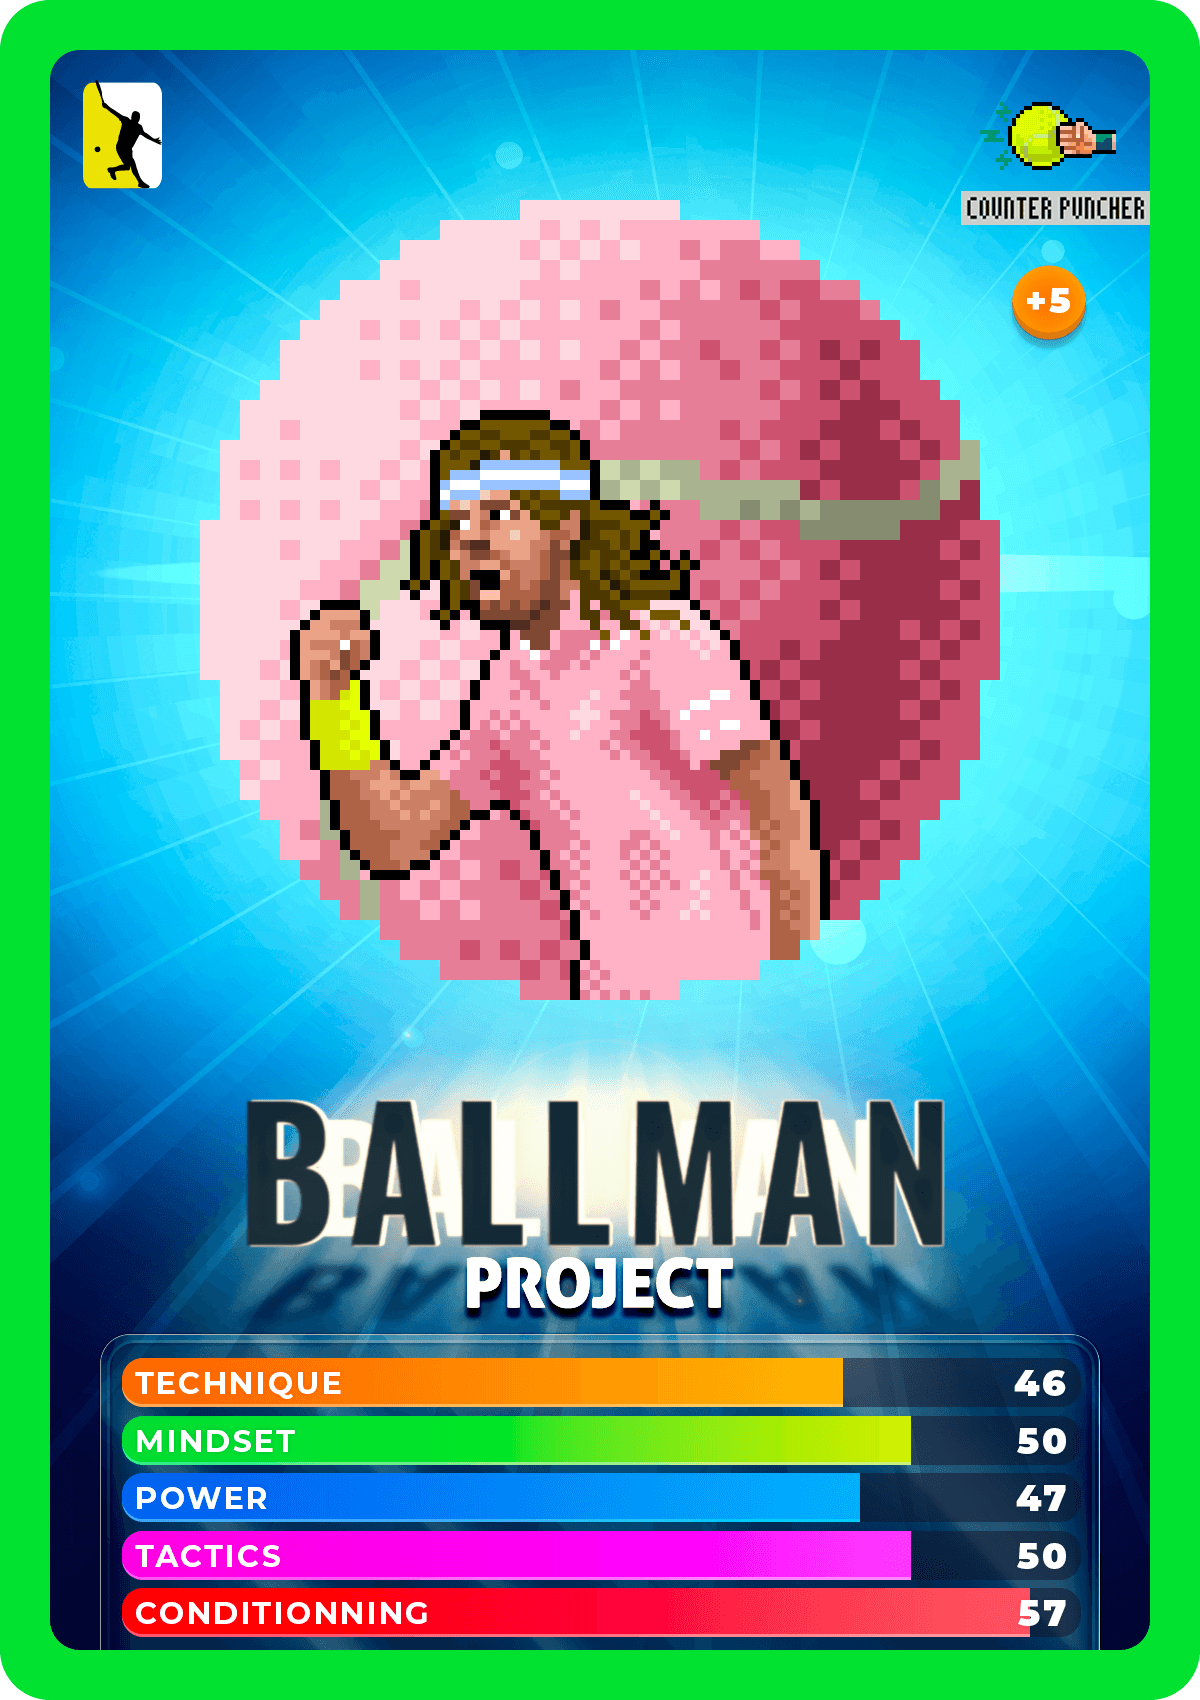 Ballman #2612